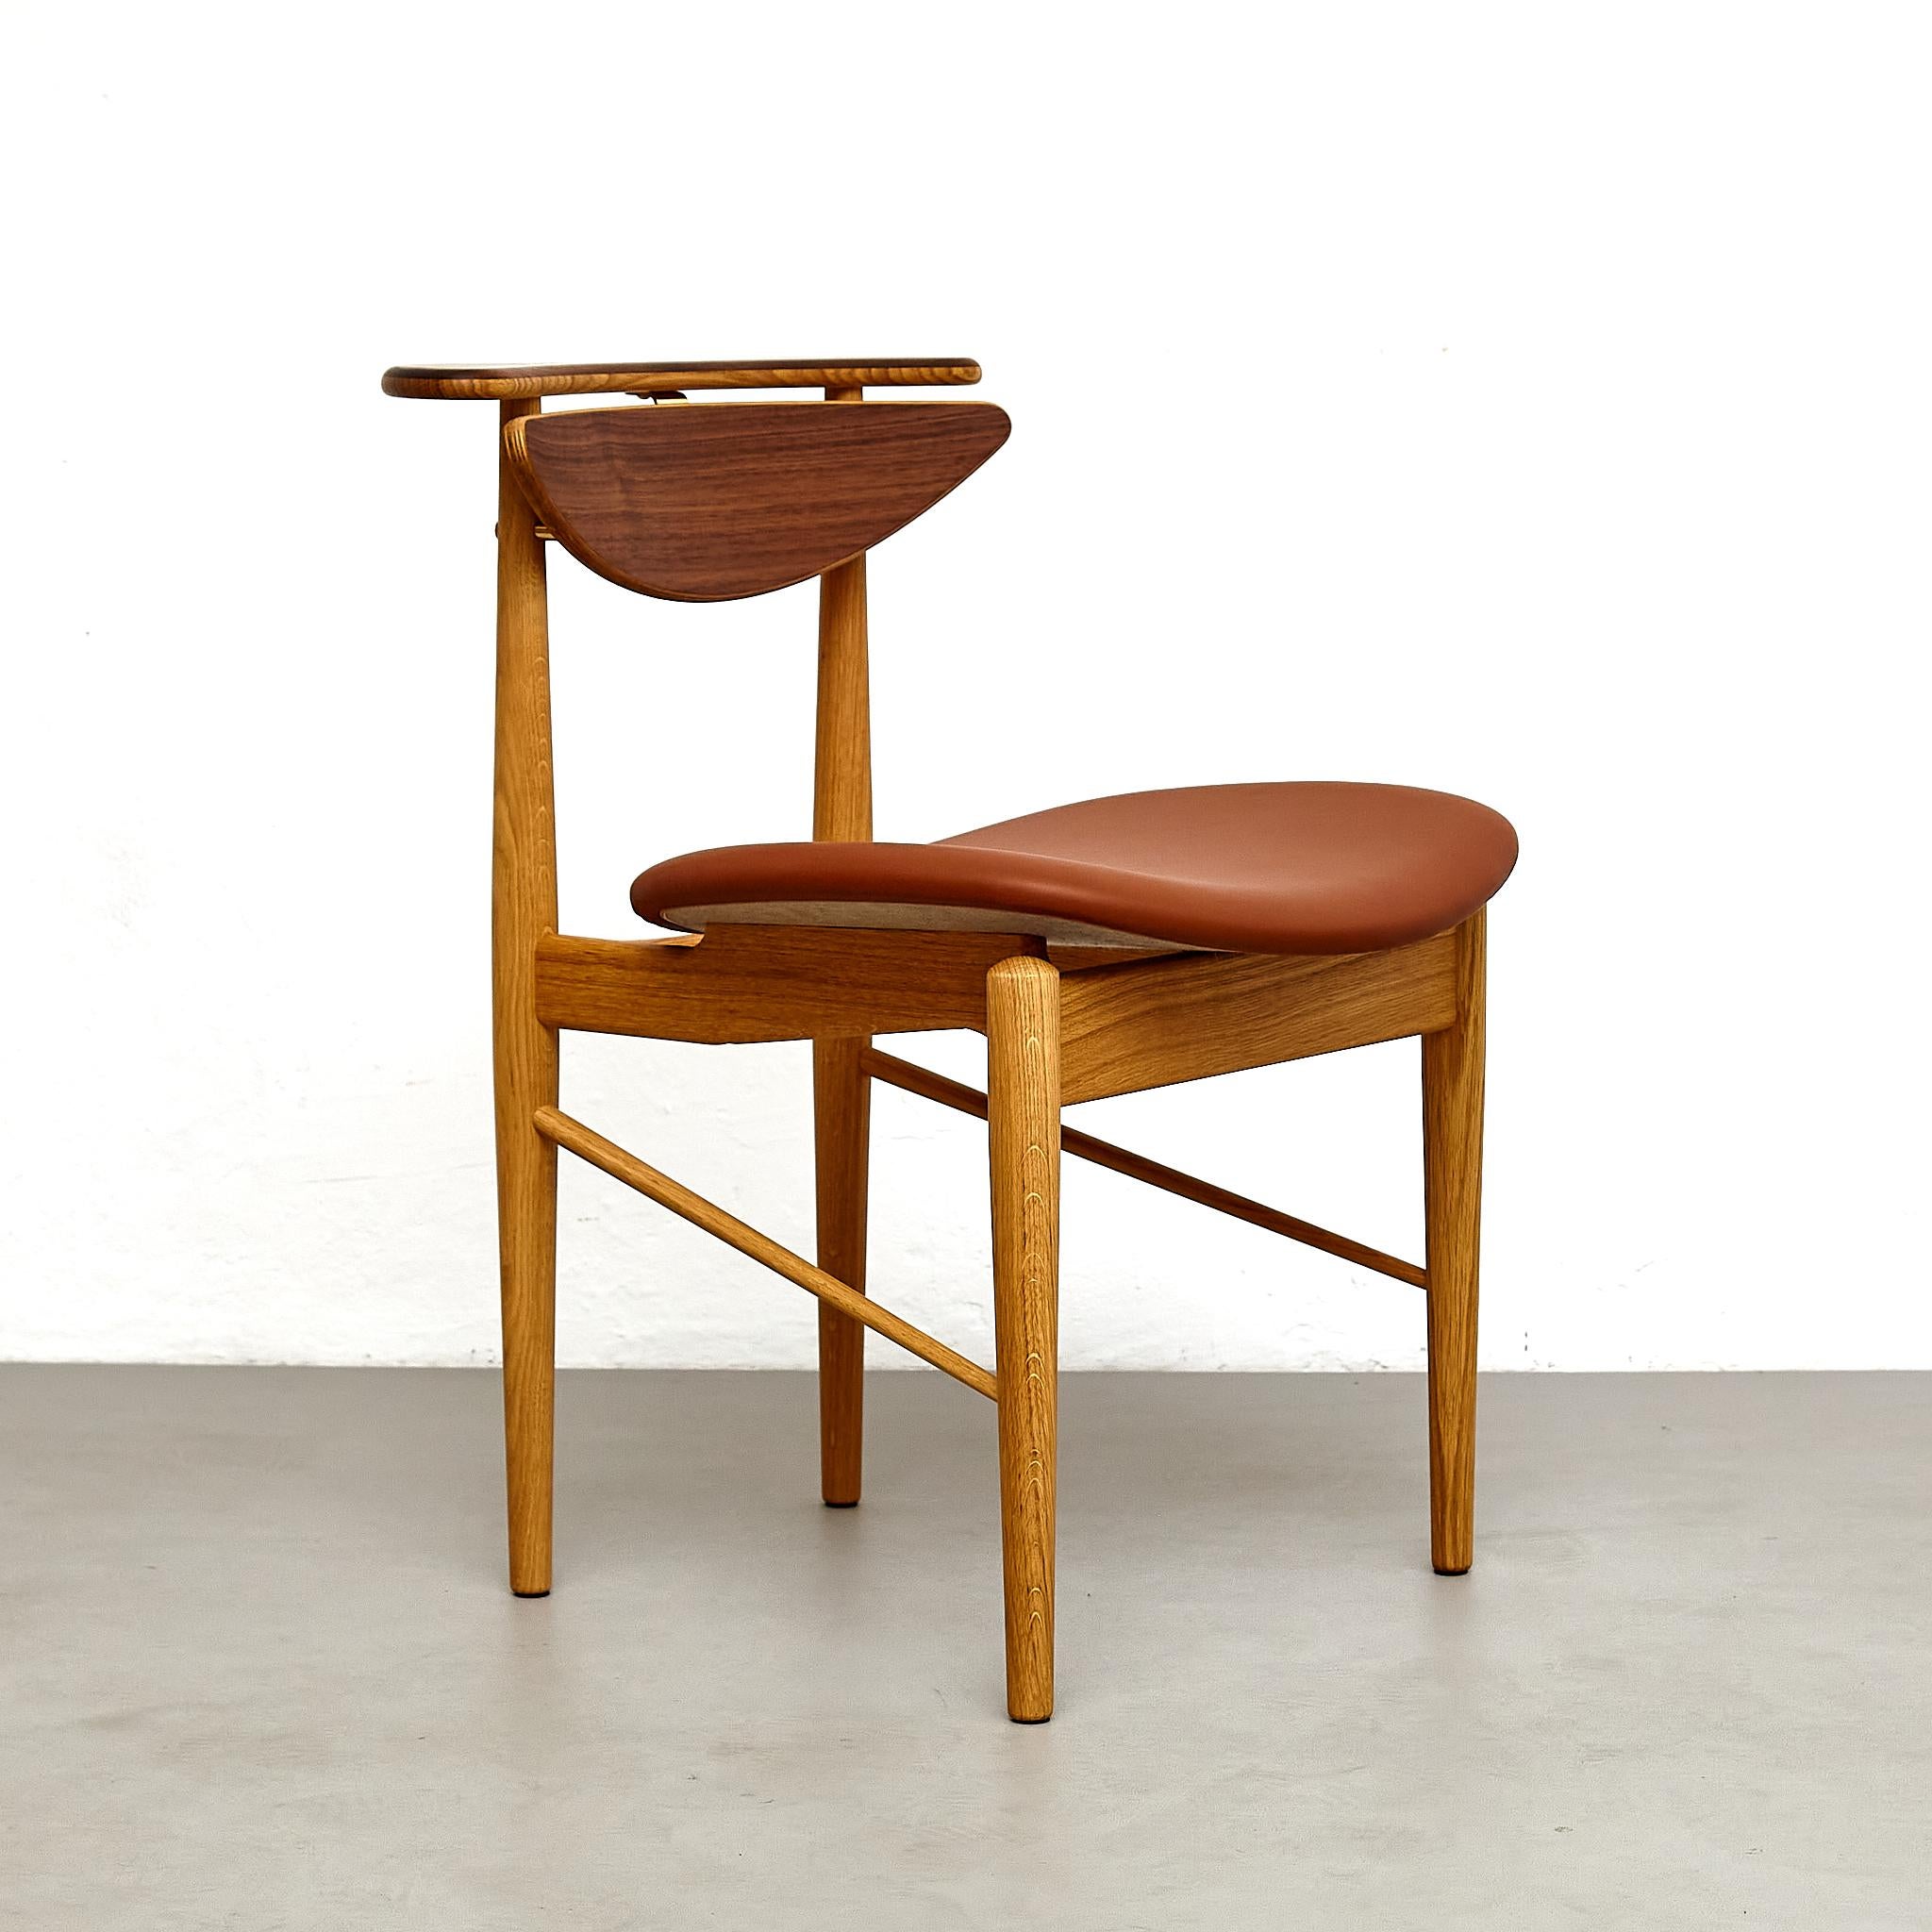 1953 von Finn Juhl entworfener Stuhl, der 2015 neu aufgelegt wurde.

Hergestellt von House of Finn Juhls in Dänemark.

MATERIALIEN: 
Holz, Leder

Abmessungen: 
T 58 cm x B 52 cm x H 74 cm. (SH 45 cm.)

Der Reading-Stuhl ist eines von Finn Juhls